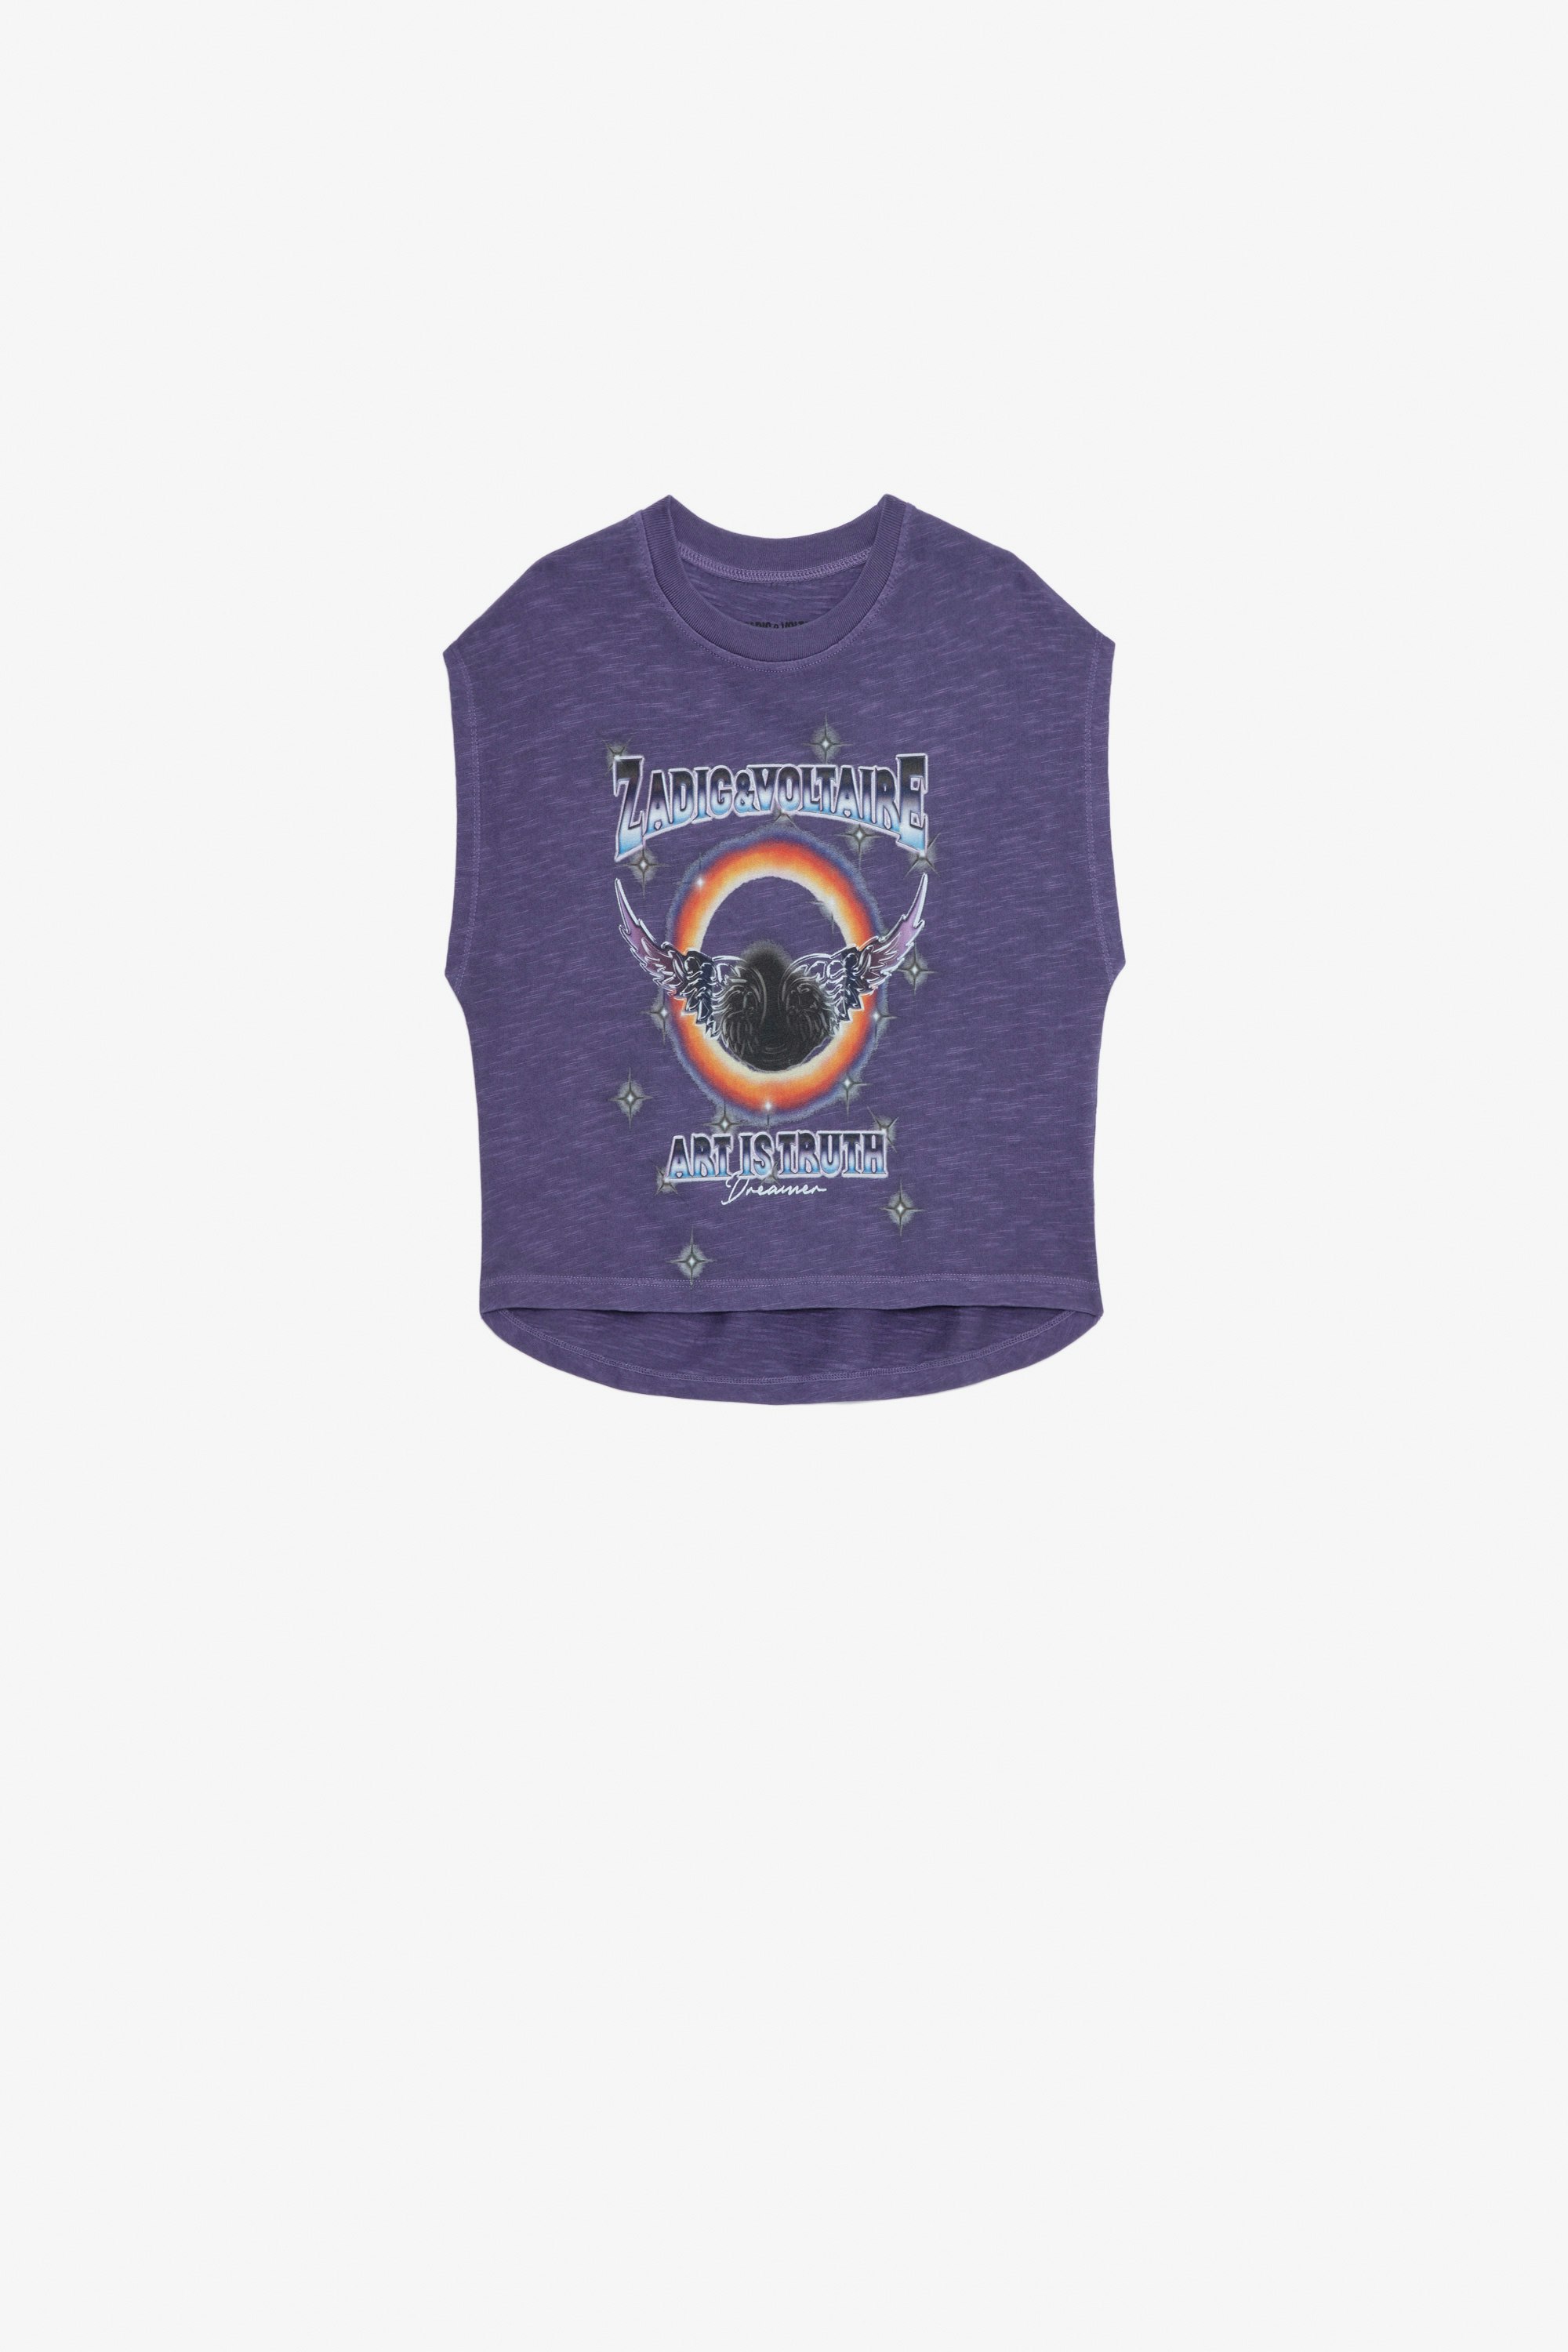 Camiseta Thya Niña - Camiseta violeta de punto flameado de algodón con estampados para niña.